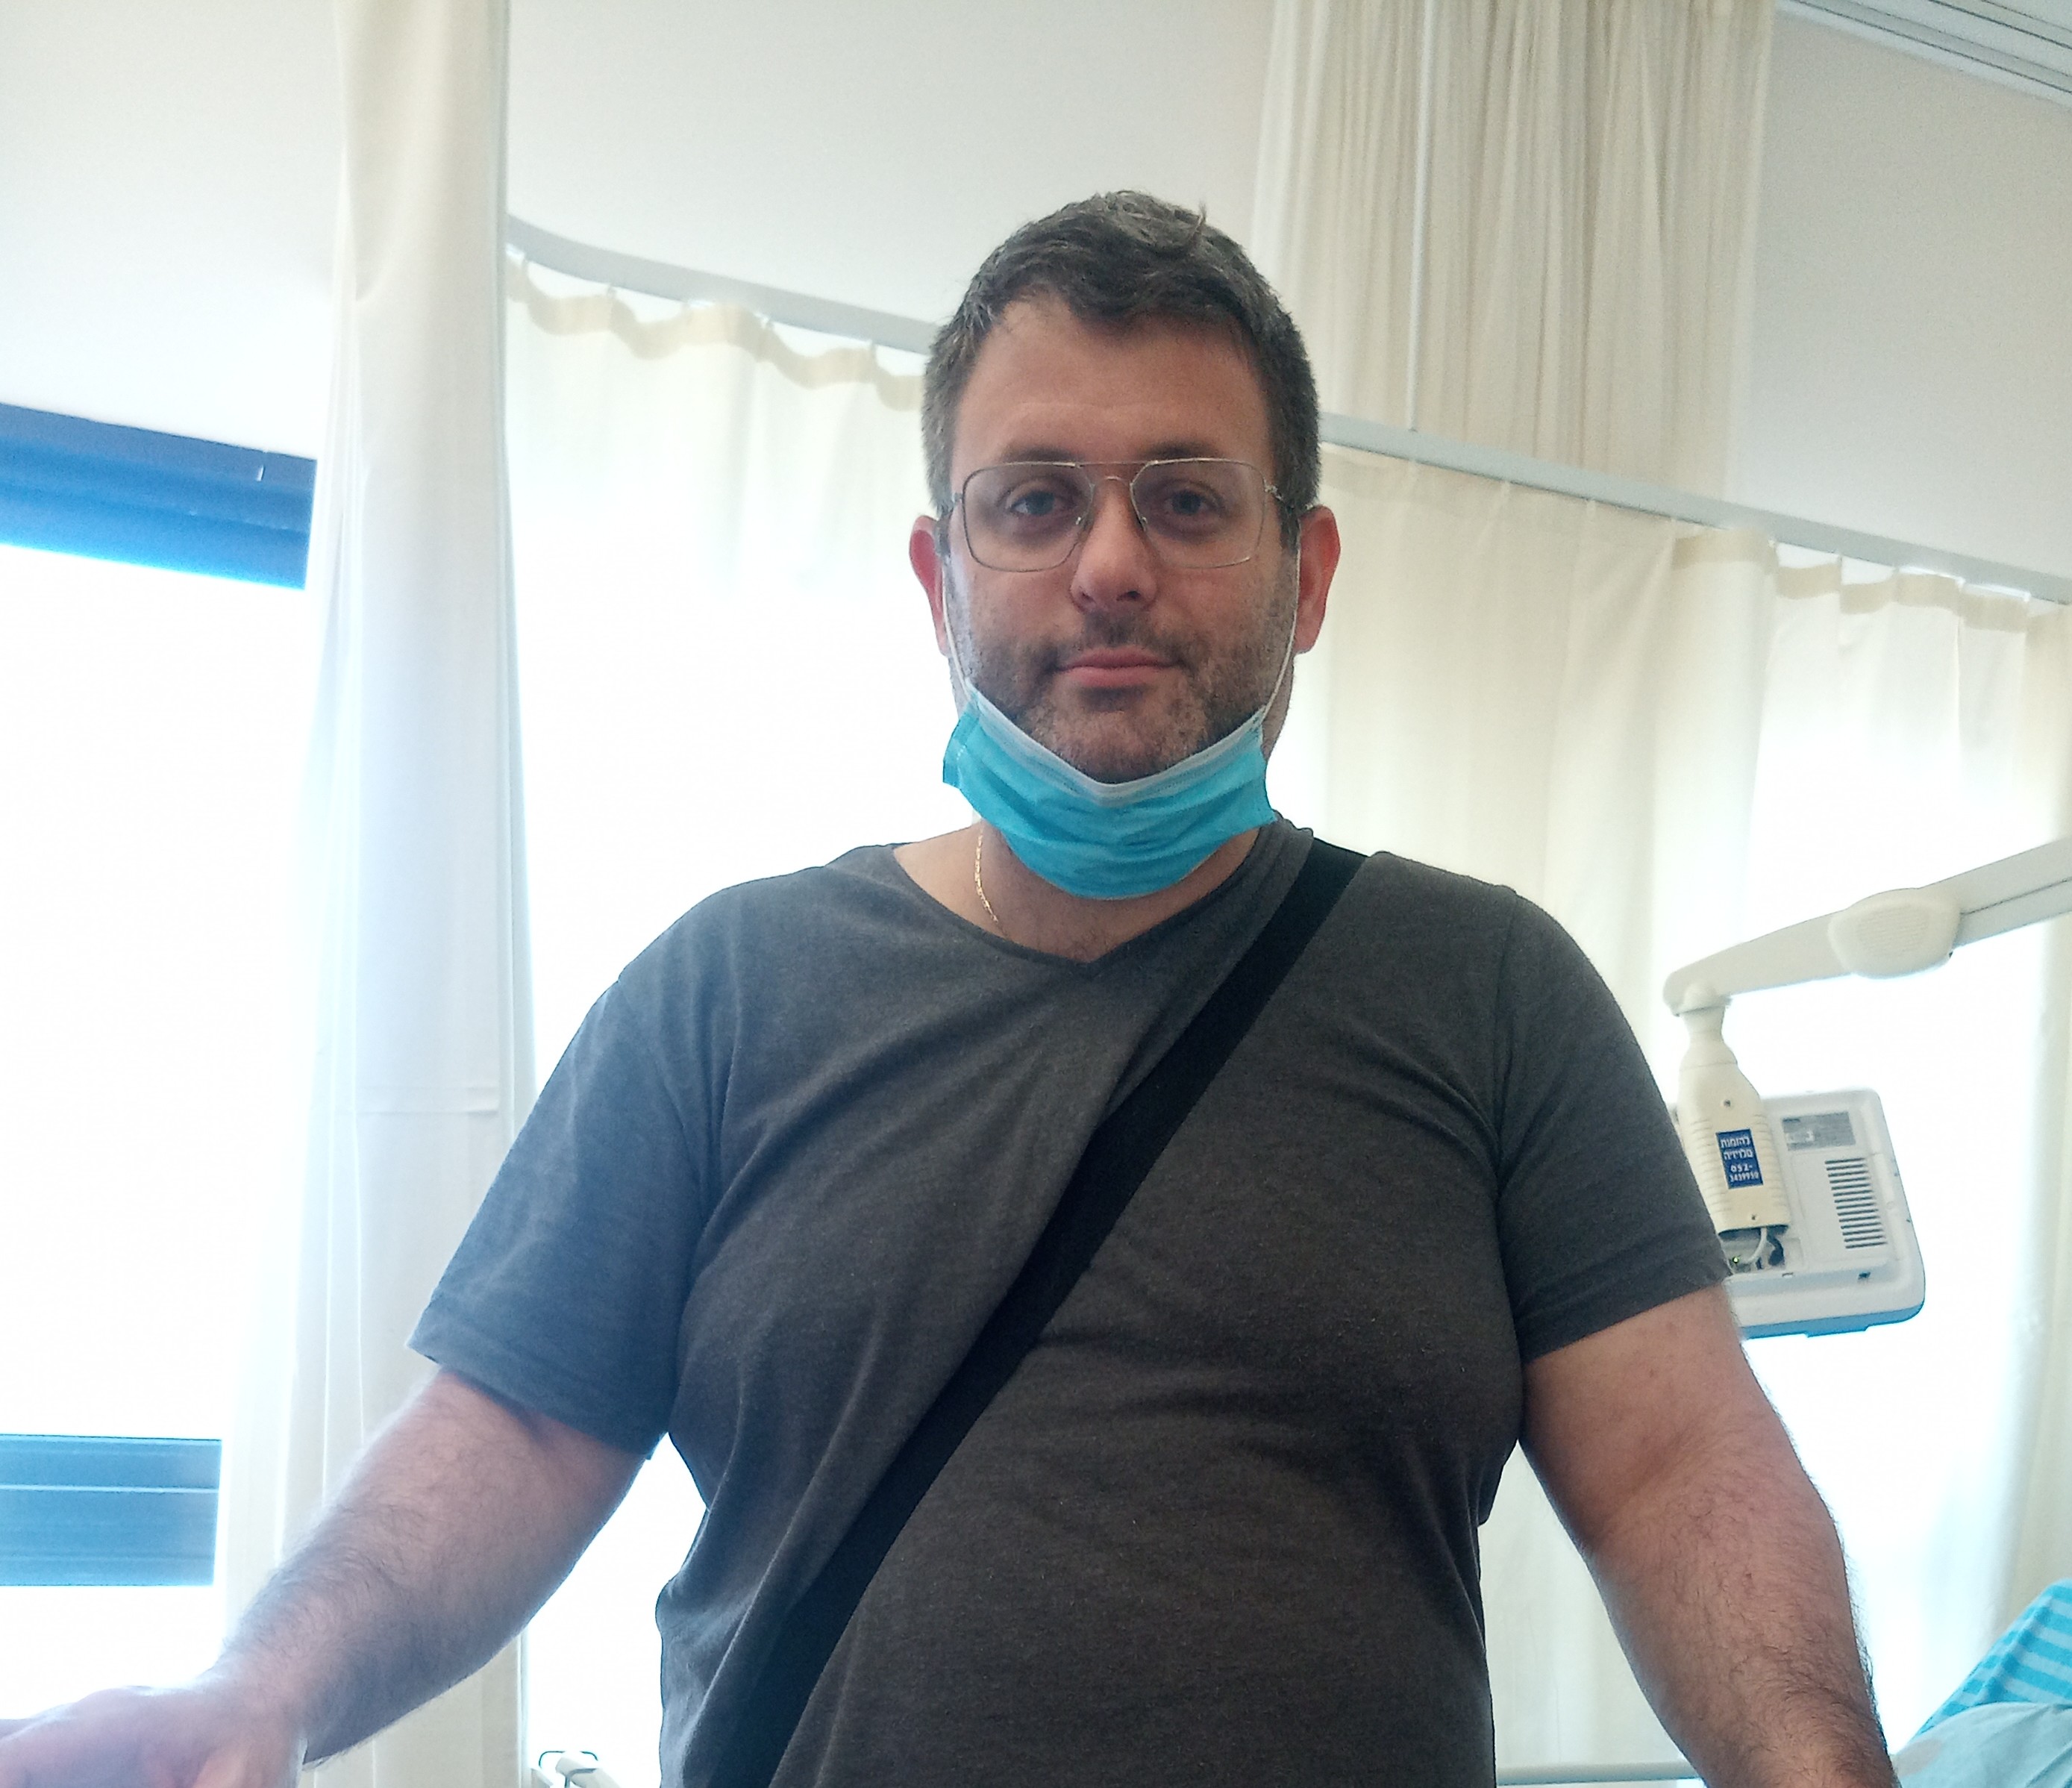 באינדקס רופאים ד"ר אבישי זפרן מתמחה ברפואה לשיכוך כאב, מומחה בכירורגיה אורתופדית | אינדקס הרופאים של ישראל